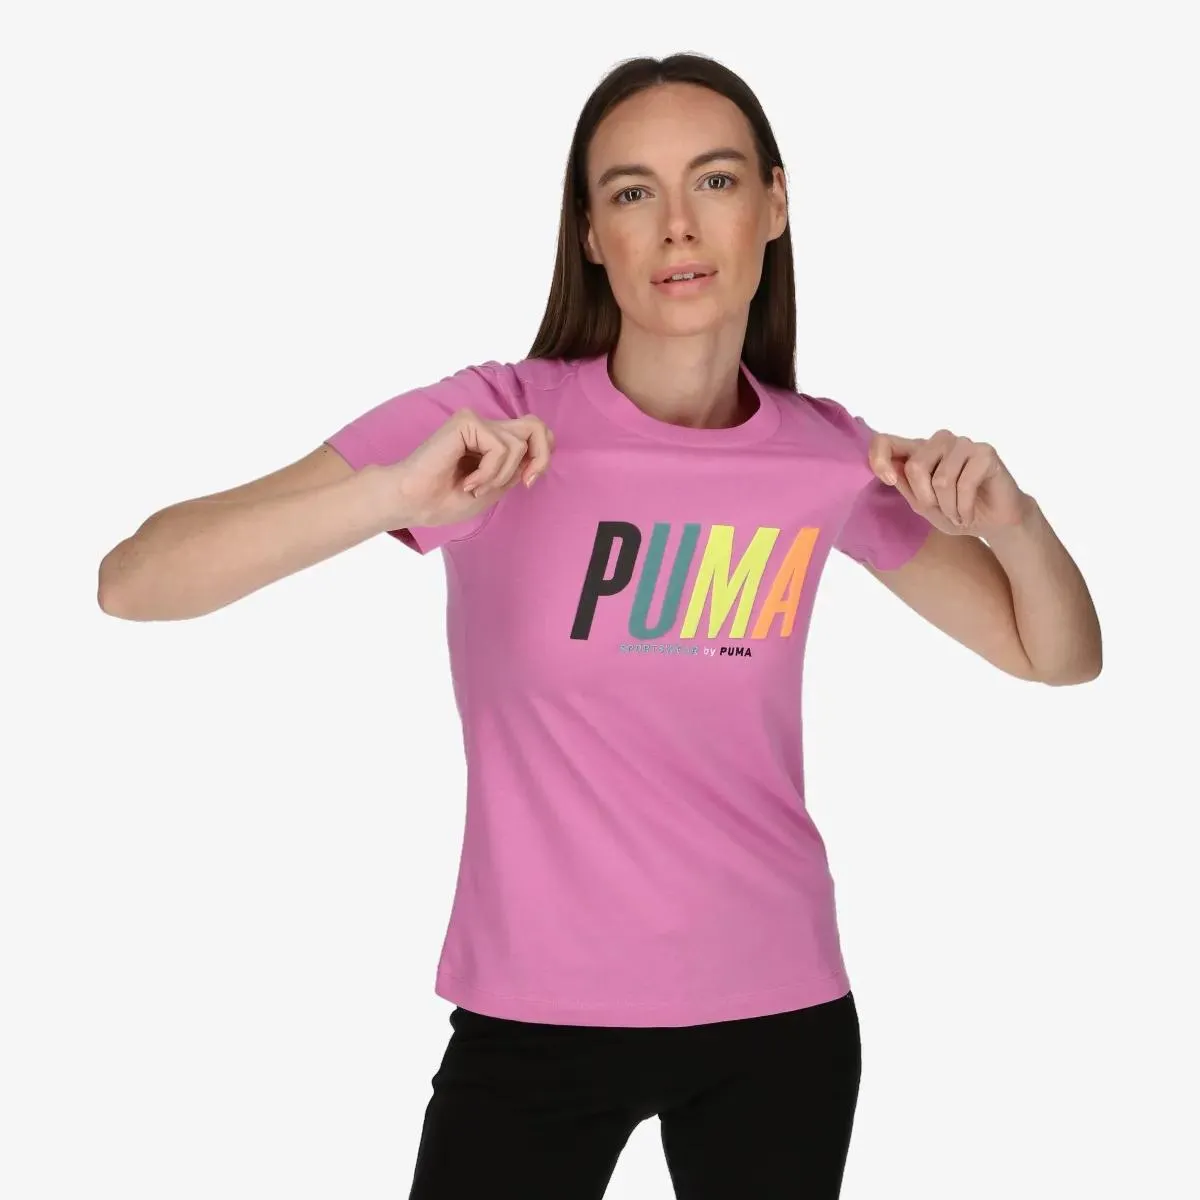 Puma T-shirt SWxP 